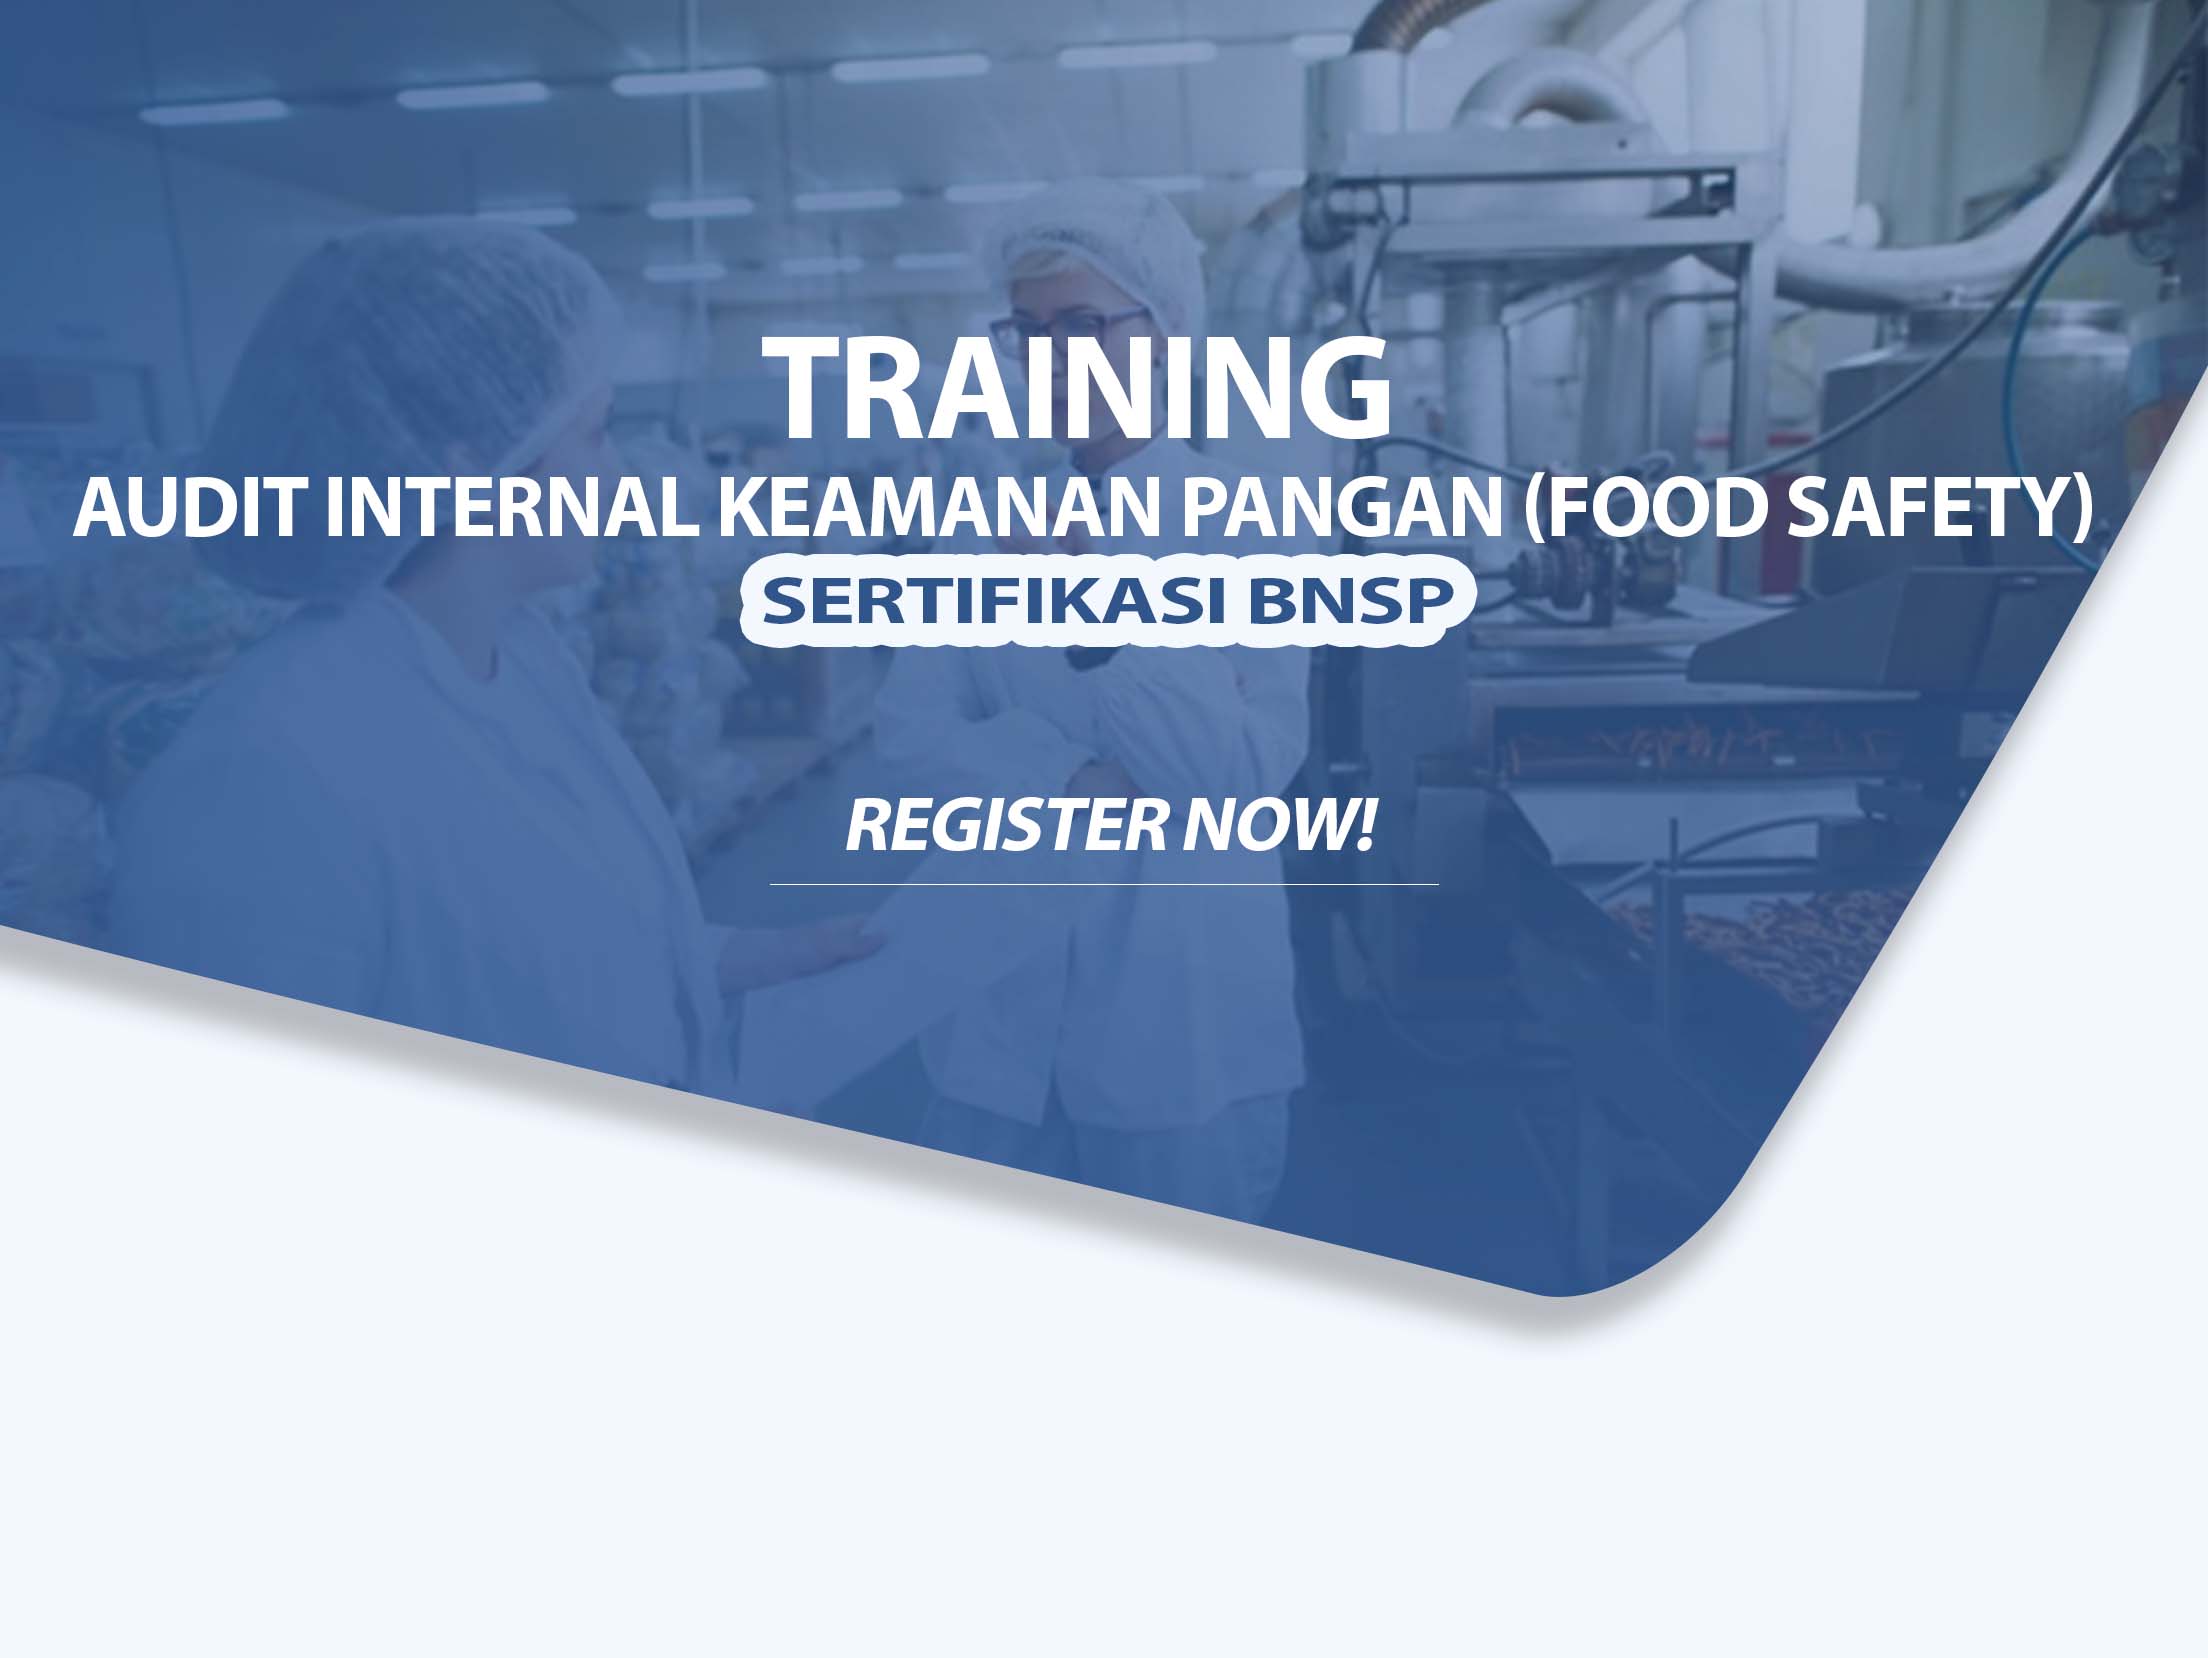 Training Audit Internal Keamanan Pangan (Food Safety) Sertifikasi BNSP